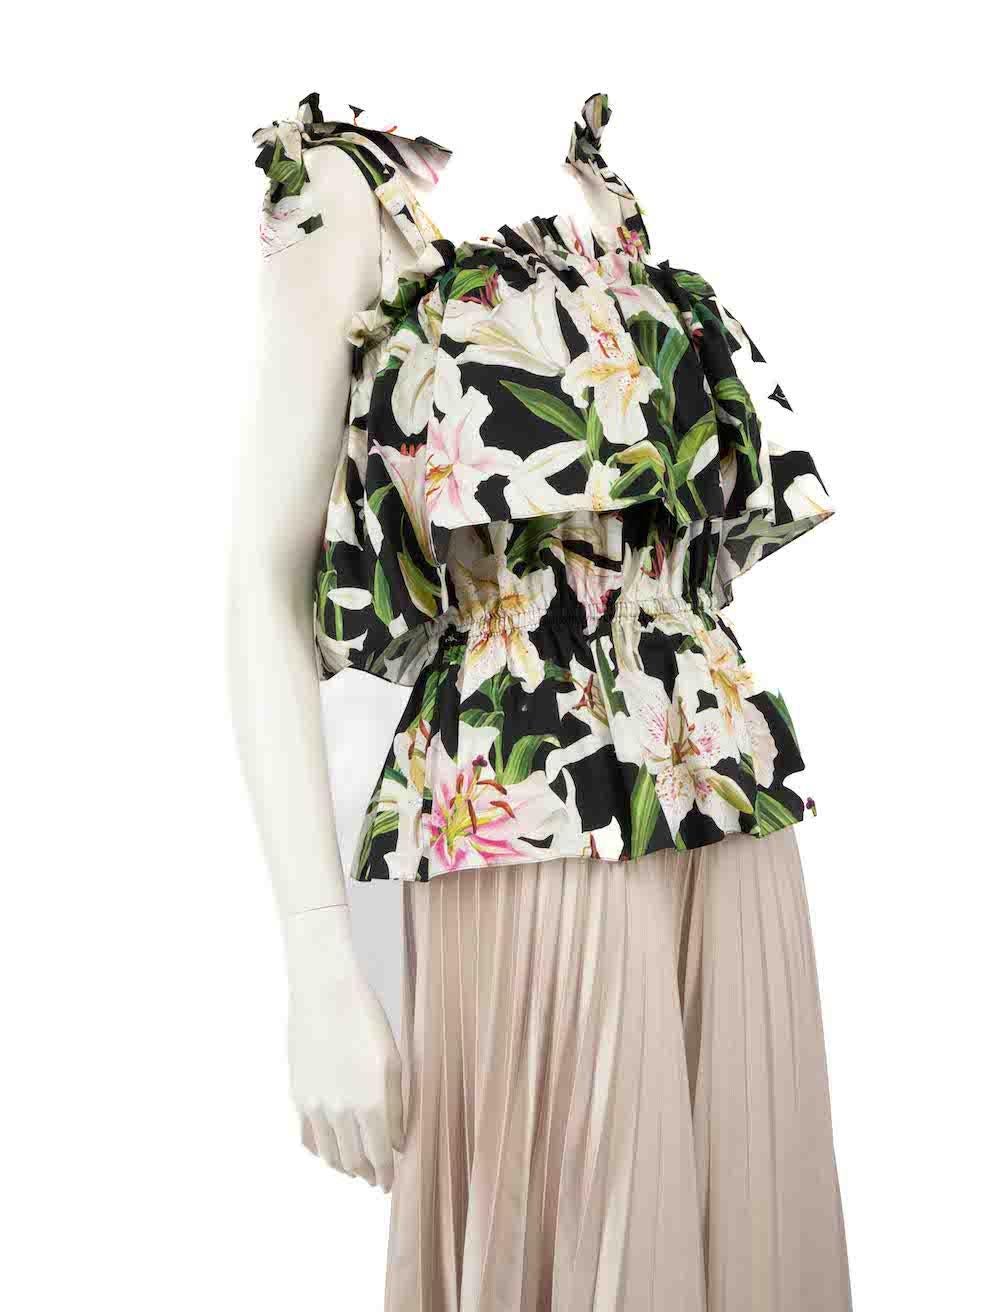 CONDIT ist sehr gut. Kaum sichtbare Abnutzungserscheinungen am Oberteil sind bei diesem gebrauchten Dolce & Gabbana Designer-Wiederverkaufsartikel zu erkennen.
 
 
 
 Einzelheiten
 
 
 Multicolor-Schwarz und Blumendruck
 
 Baumwolle
 
 Top
 
 Lilie